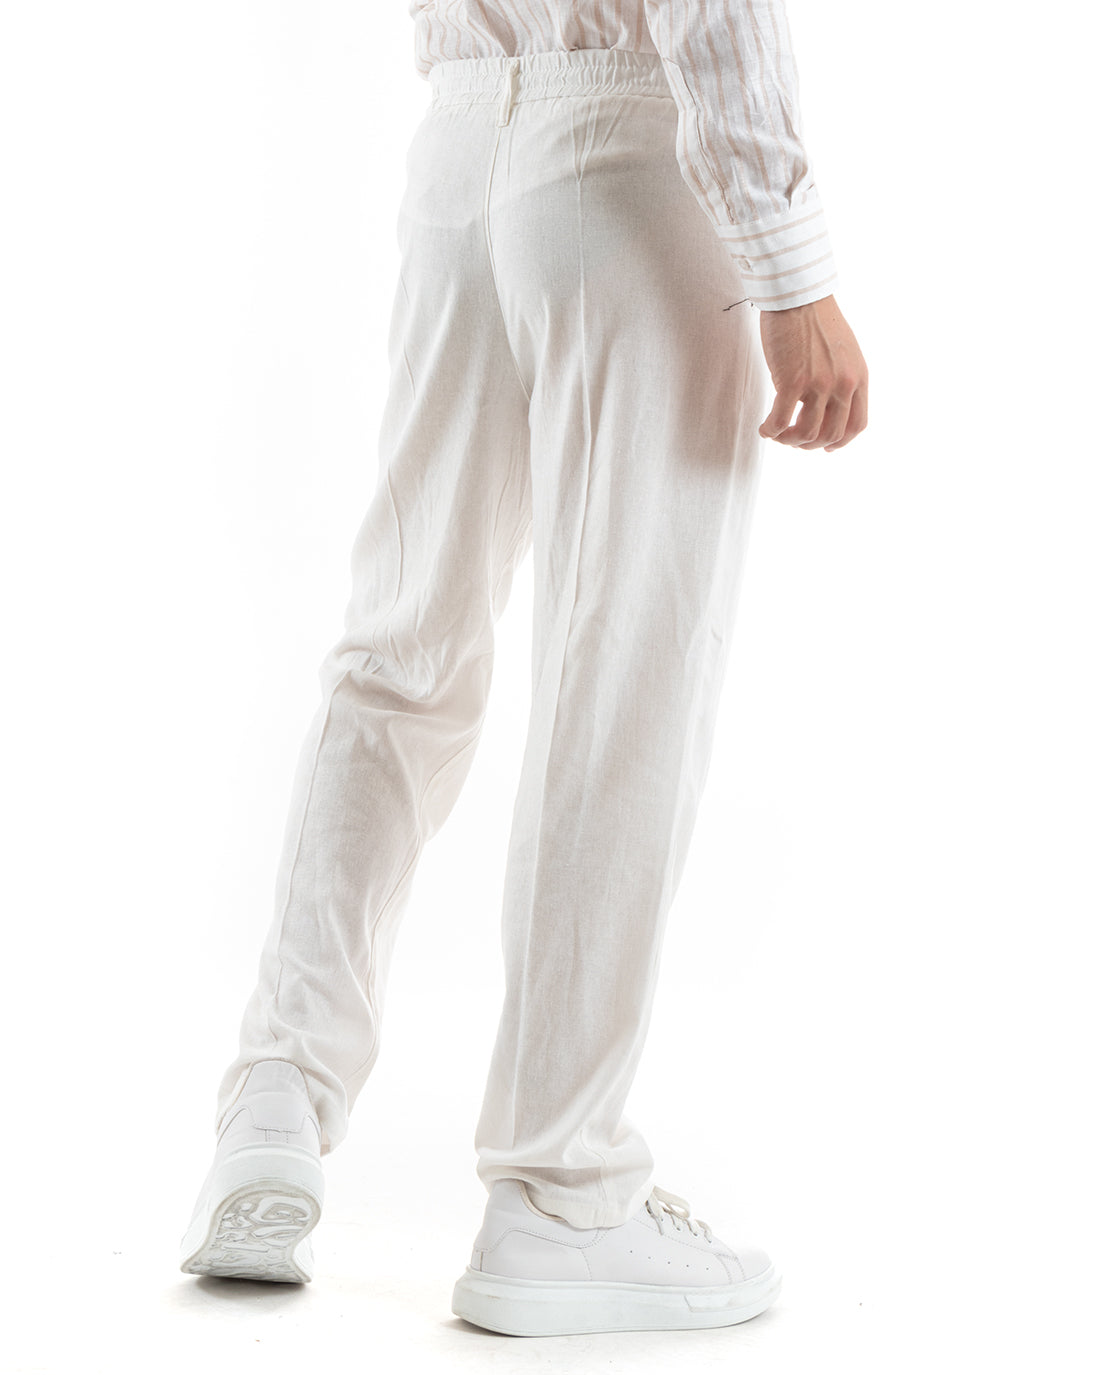 Pantaloni Uomo Baggy Lungo Abbottonatura Allungata Elastico Sul Retro Lino Bianco Casual GIOSAL-P5894A